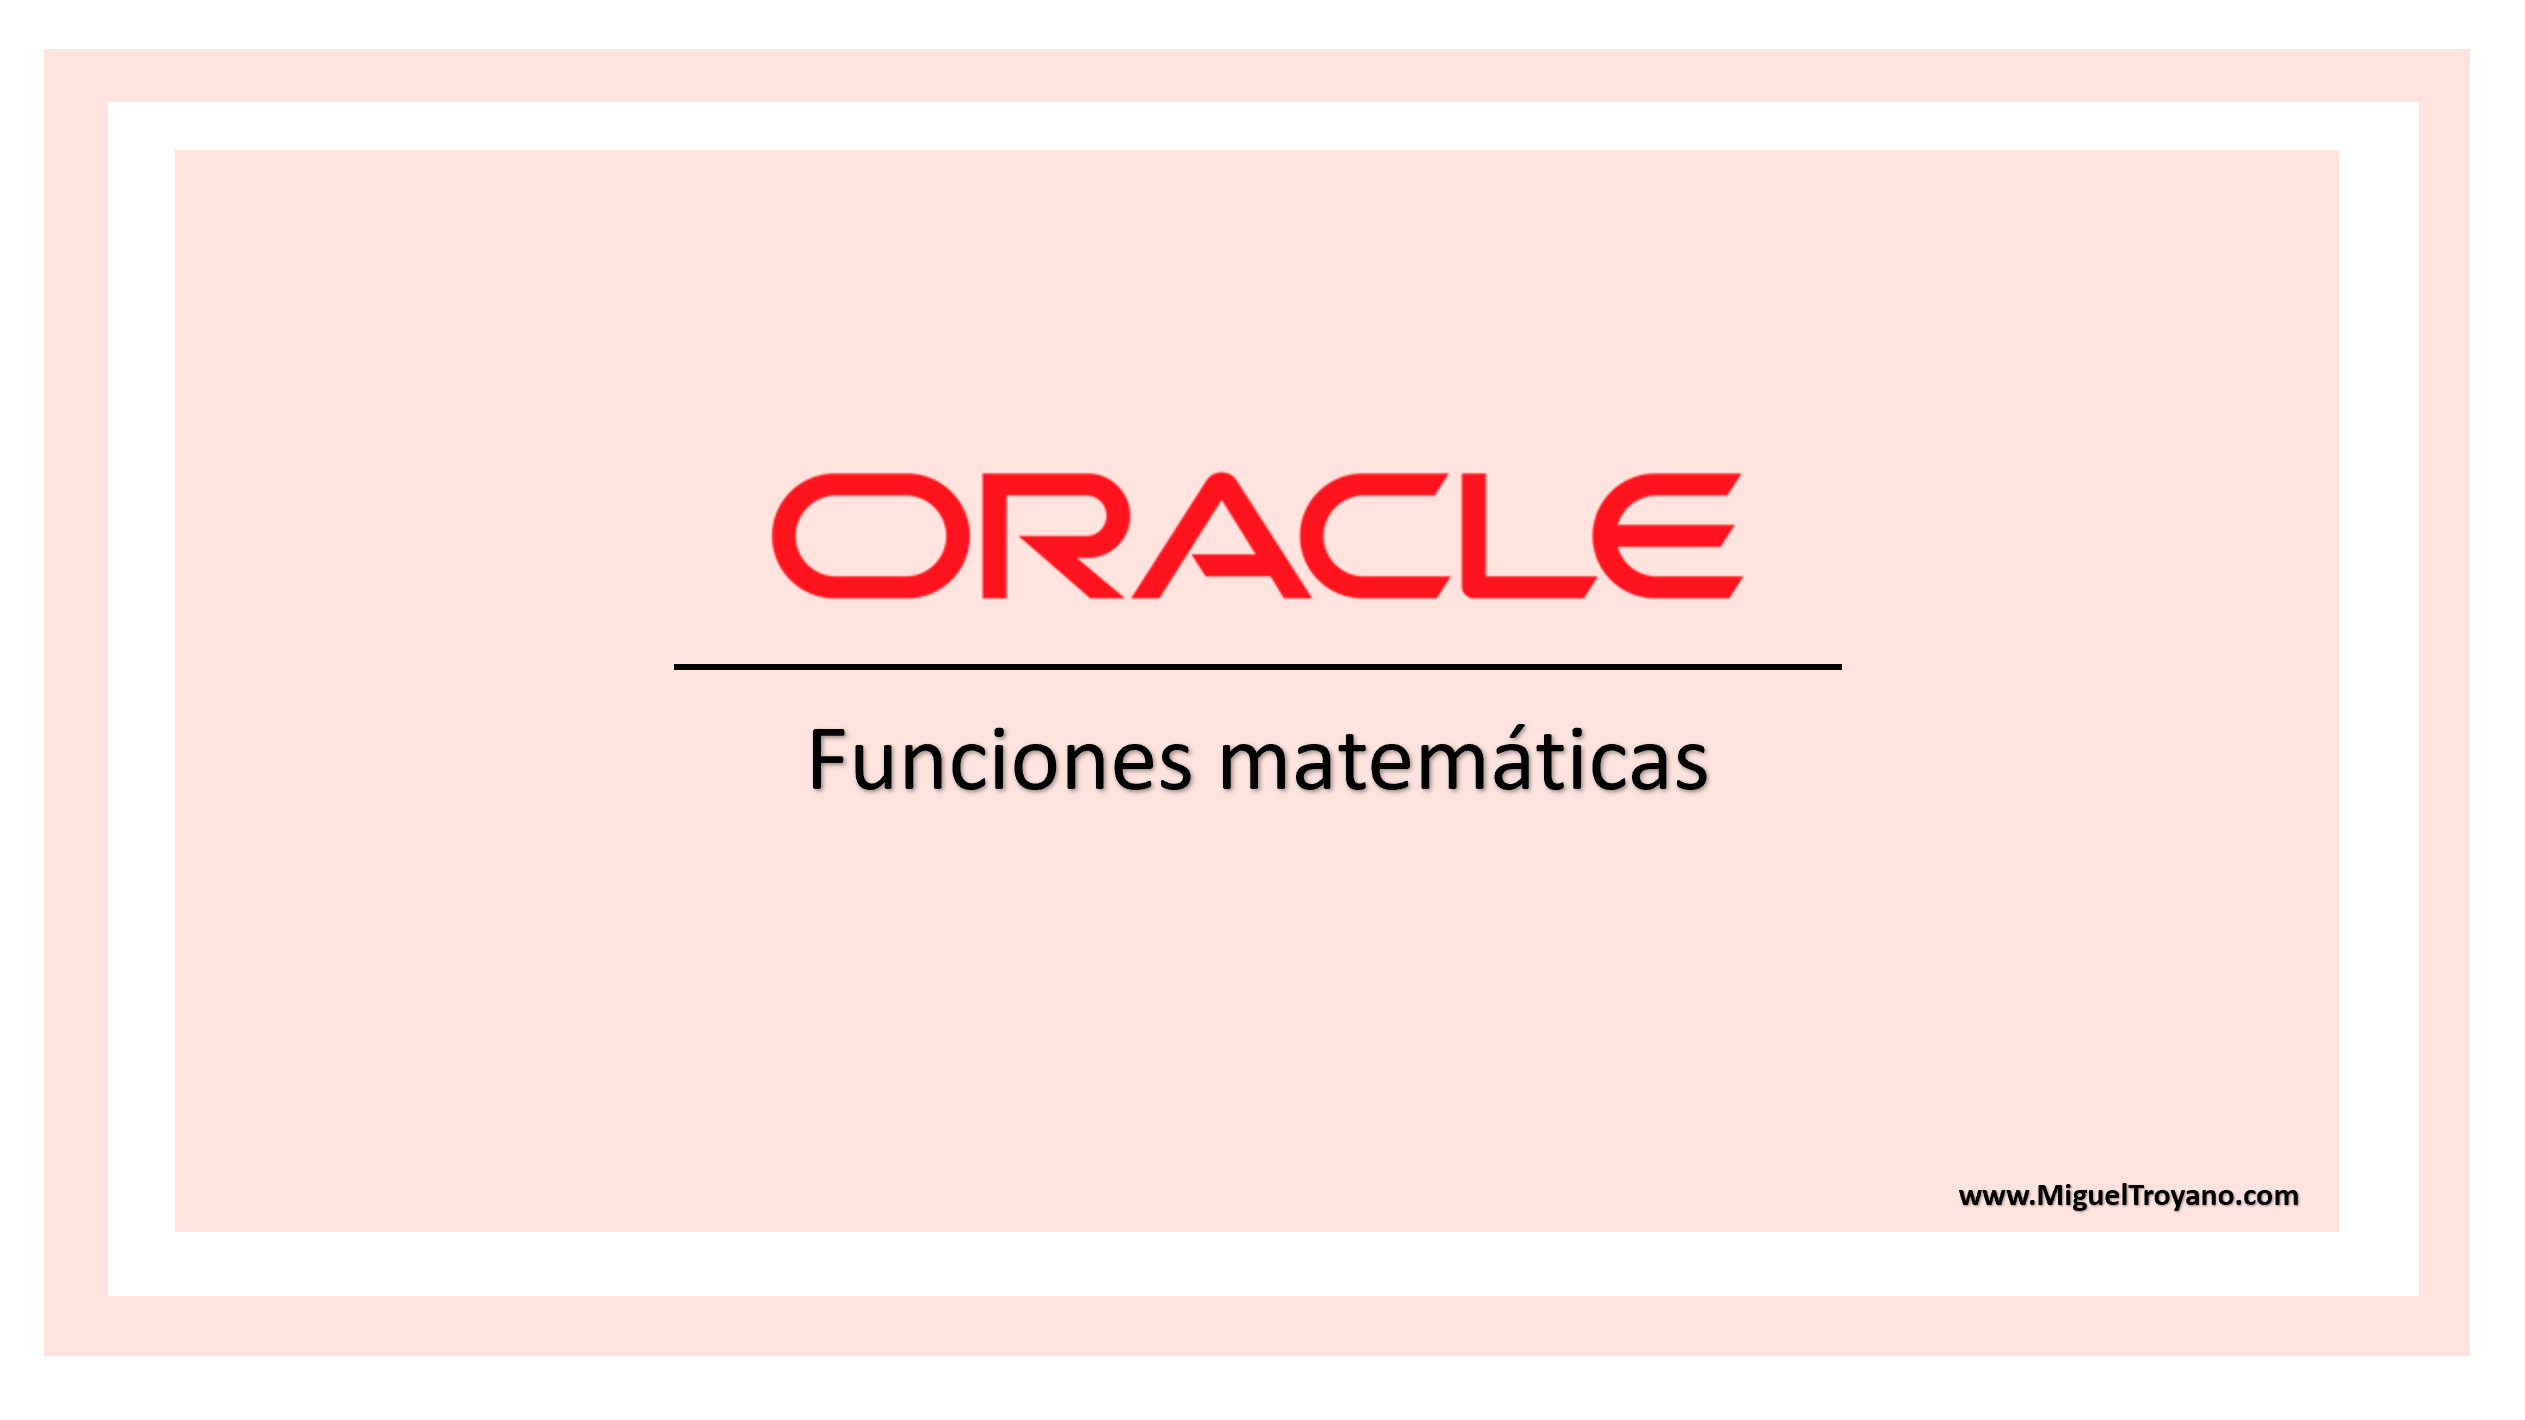 Funciones matemáticas en Oracle